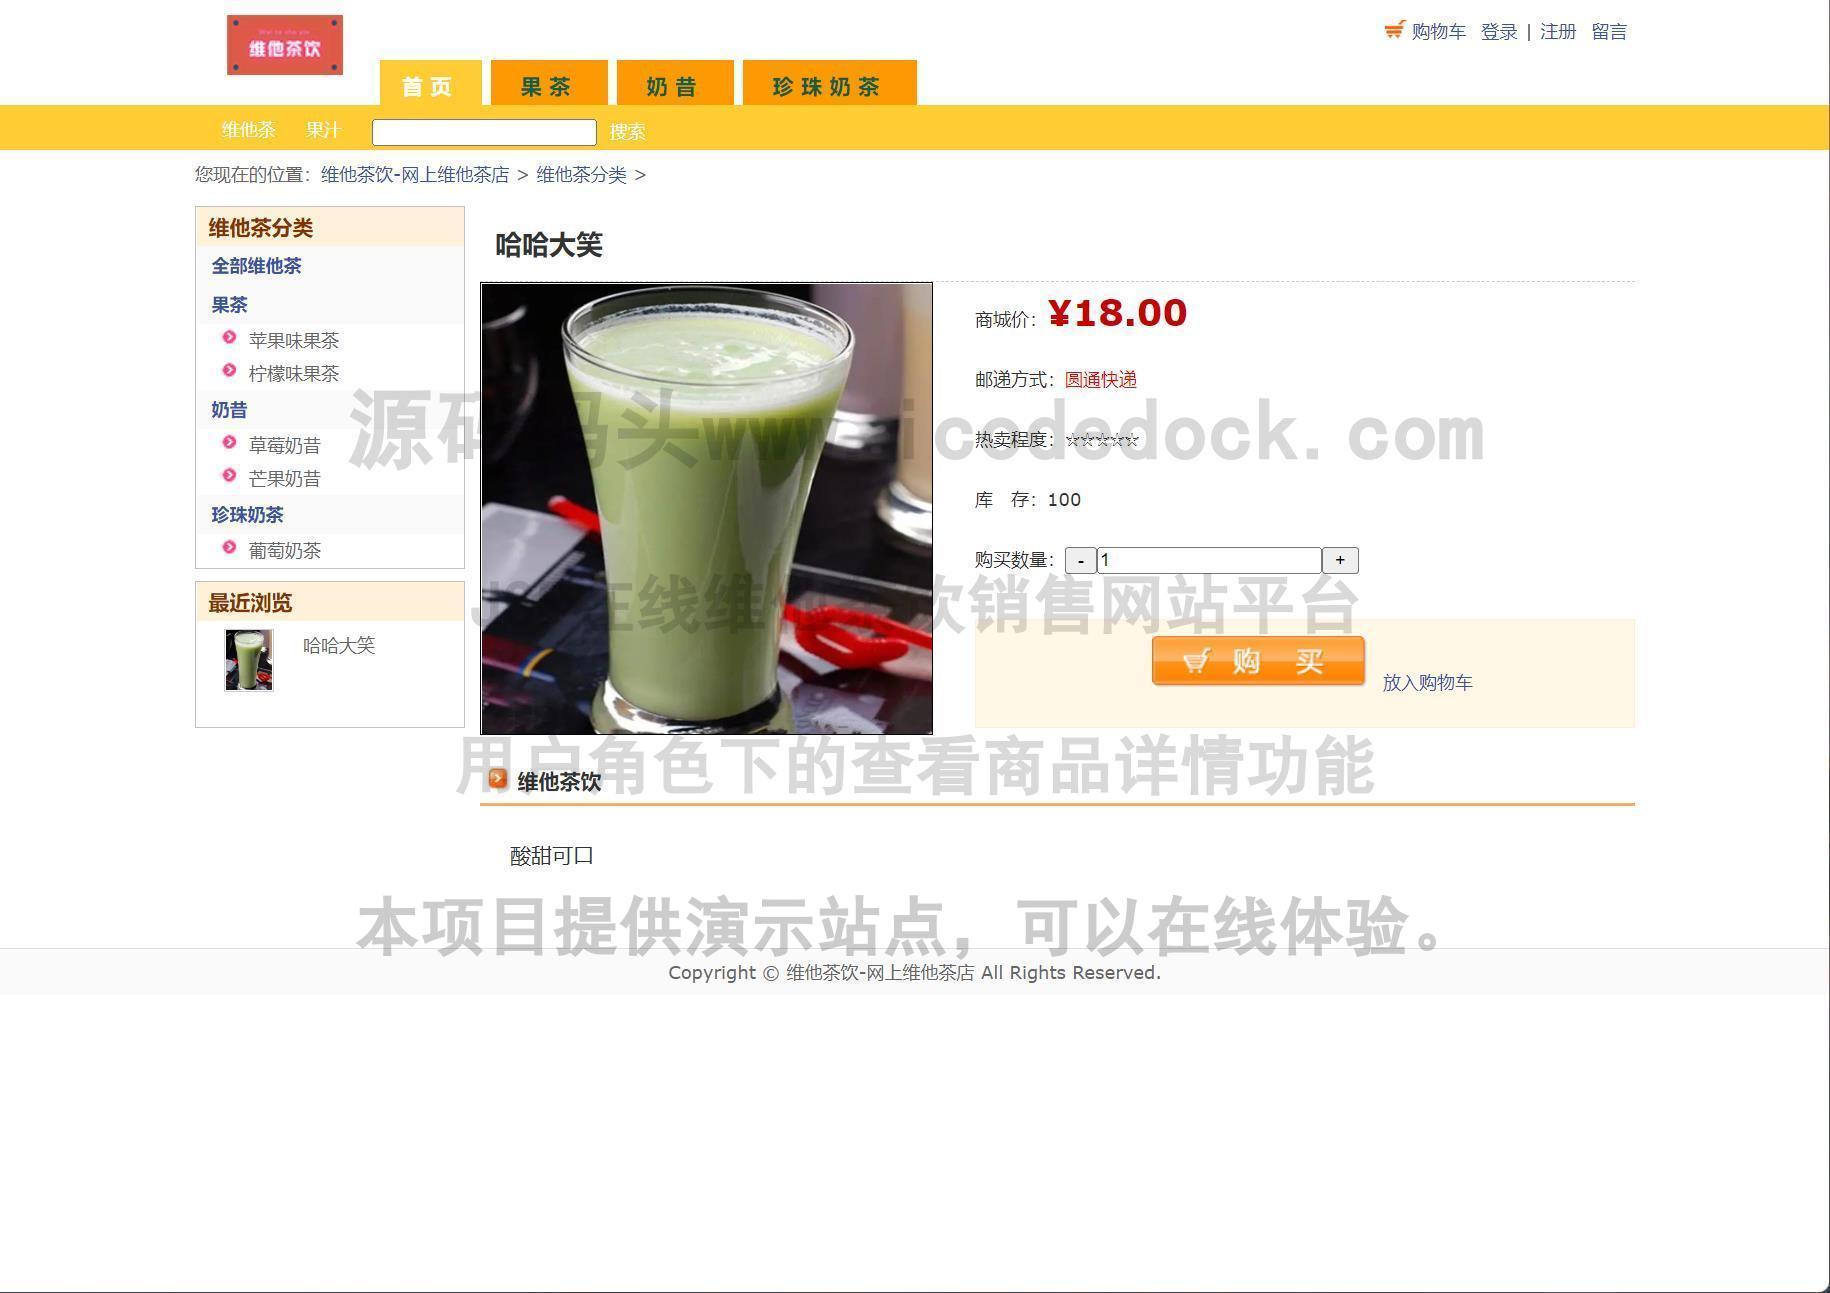 源码码头-JSP在线维他茶饮销售网站平台-用户角色-查看商品详情